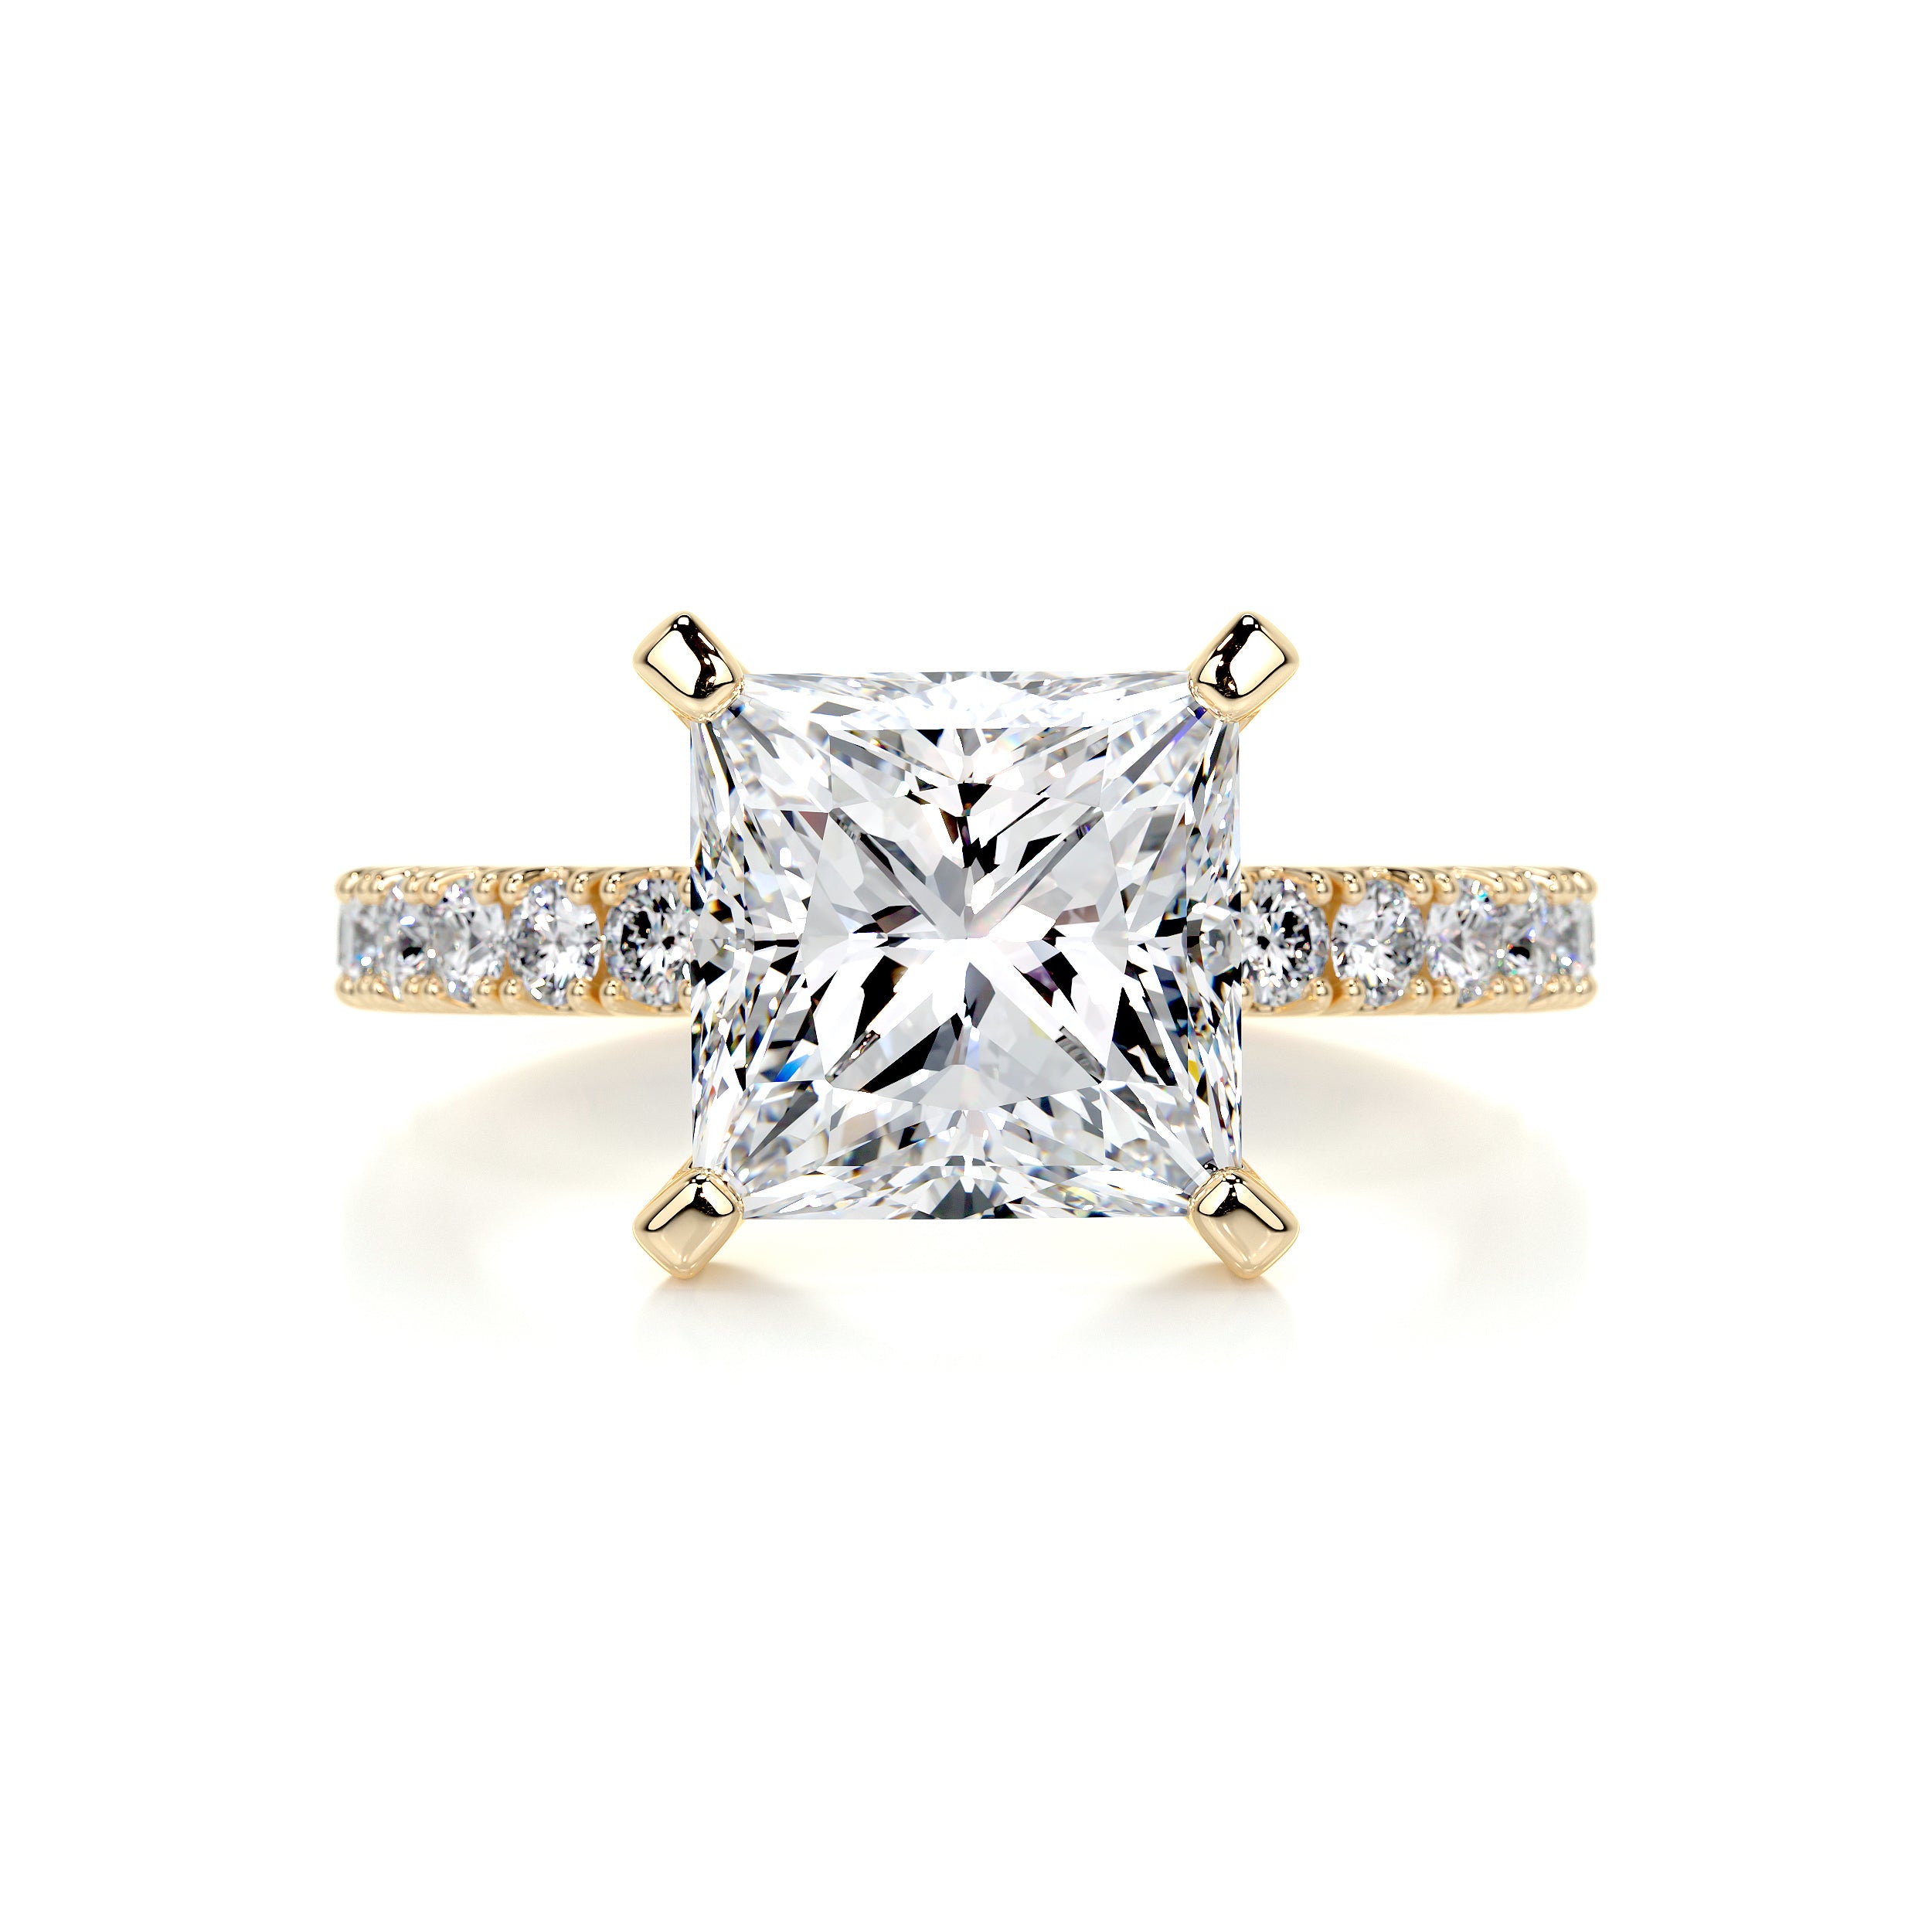 Blair Diamond Engagement Ring   (3.5 Carat) -18K Yellow Gold